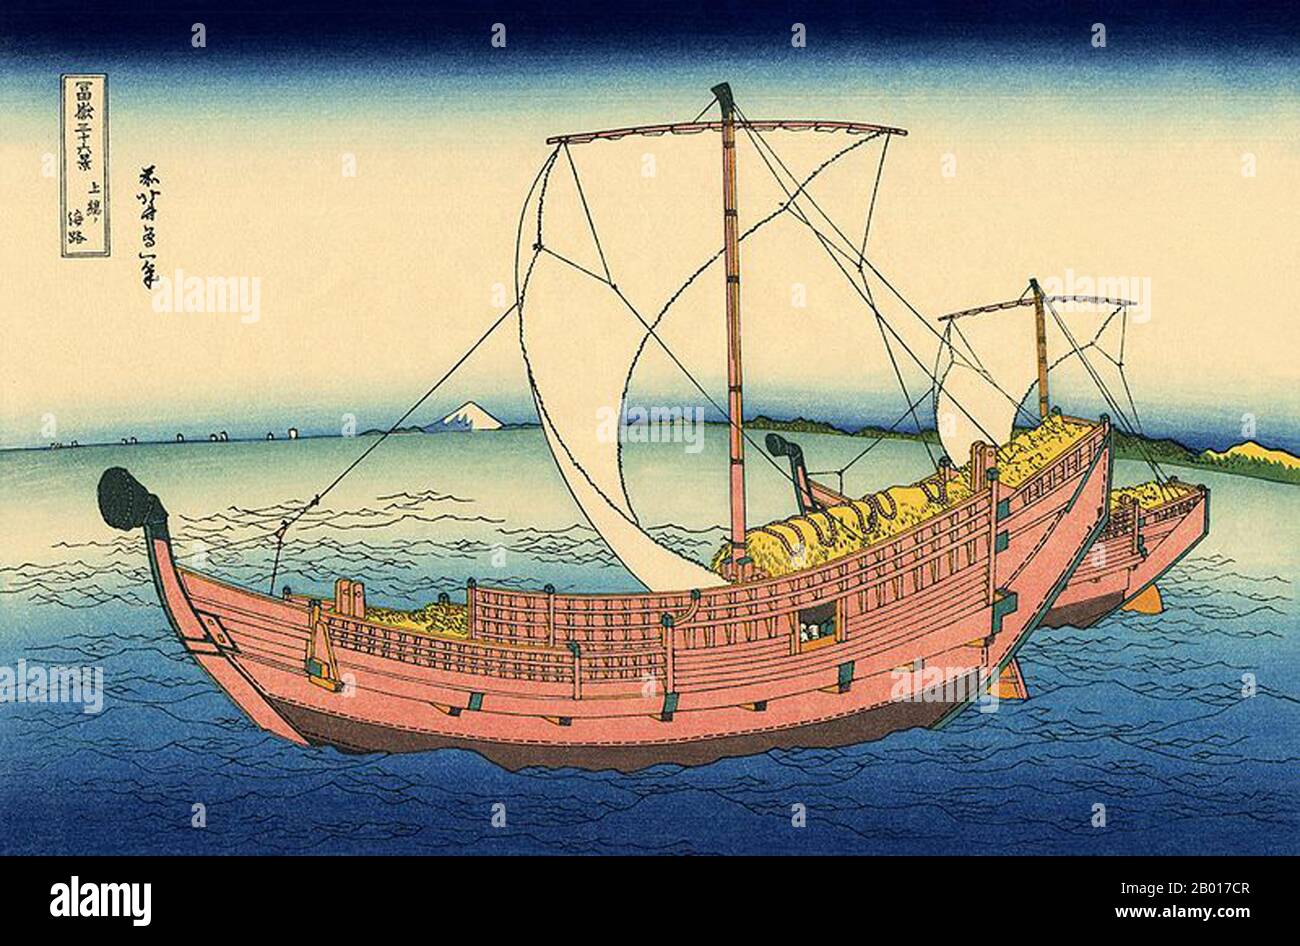 Japan: „auf See vor Kazusa“. Ukiyo-e Holzschnitt aus der Serie ‘Thirty-Six views of Mount Fuji’ von Katsushika Hokusai (31. Oktober 1760 - 10. Mai 1849), 1830. ‘Thirty-Six Views of Mount Fuji’ ist eine Serie von Holzschnitten der japanischen Künstlerin Katsushika Hokusai, die „Sukiyo-e“ ‘. Die Serie zeigt den Fuji in unterschiedlichen Jahreszeiten und Wetterbedingungen an verschiedenen Orten und Entfernungen. Es besteht tatsächlich aus 46 Drucken, die zwischen 1826 und 1833 entstanden sind. Die ersten 36 wurden in die Originalpublikation aufgenommen, und aufgrund ihrer Popularität wurden nach der Originalpublikation 10 weitere hinzugefügt. Stockfoto